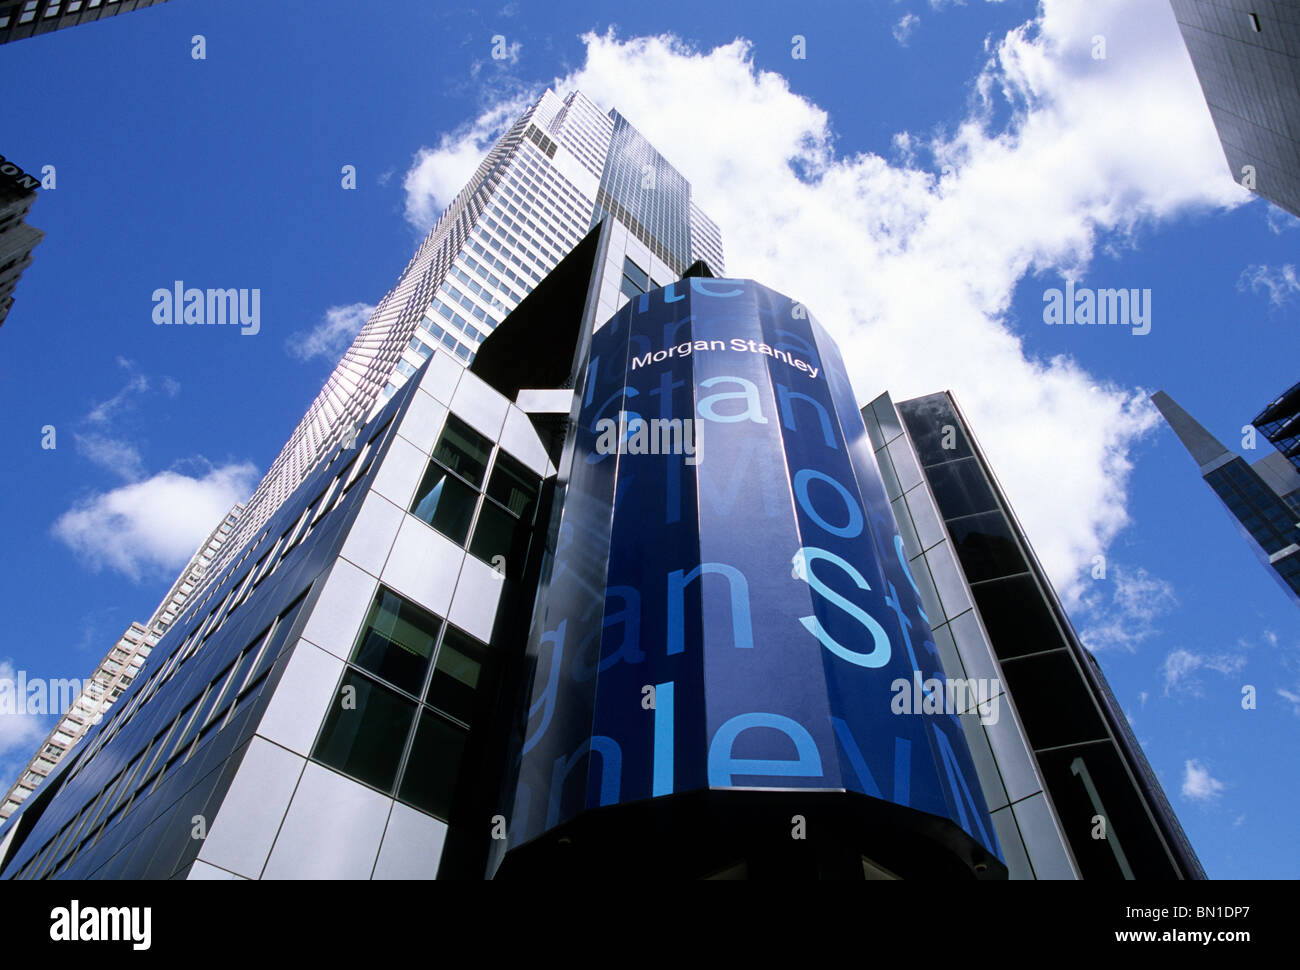 Morgan Stanley Bank Building, New York City, Broadway et Times Square, Midtown Manhattan Skyscraper. Economie et biens immobiliers commerciaux . ÉTATS-UNIS Banque D'Images